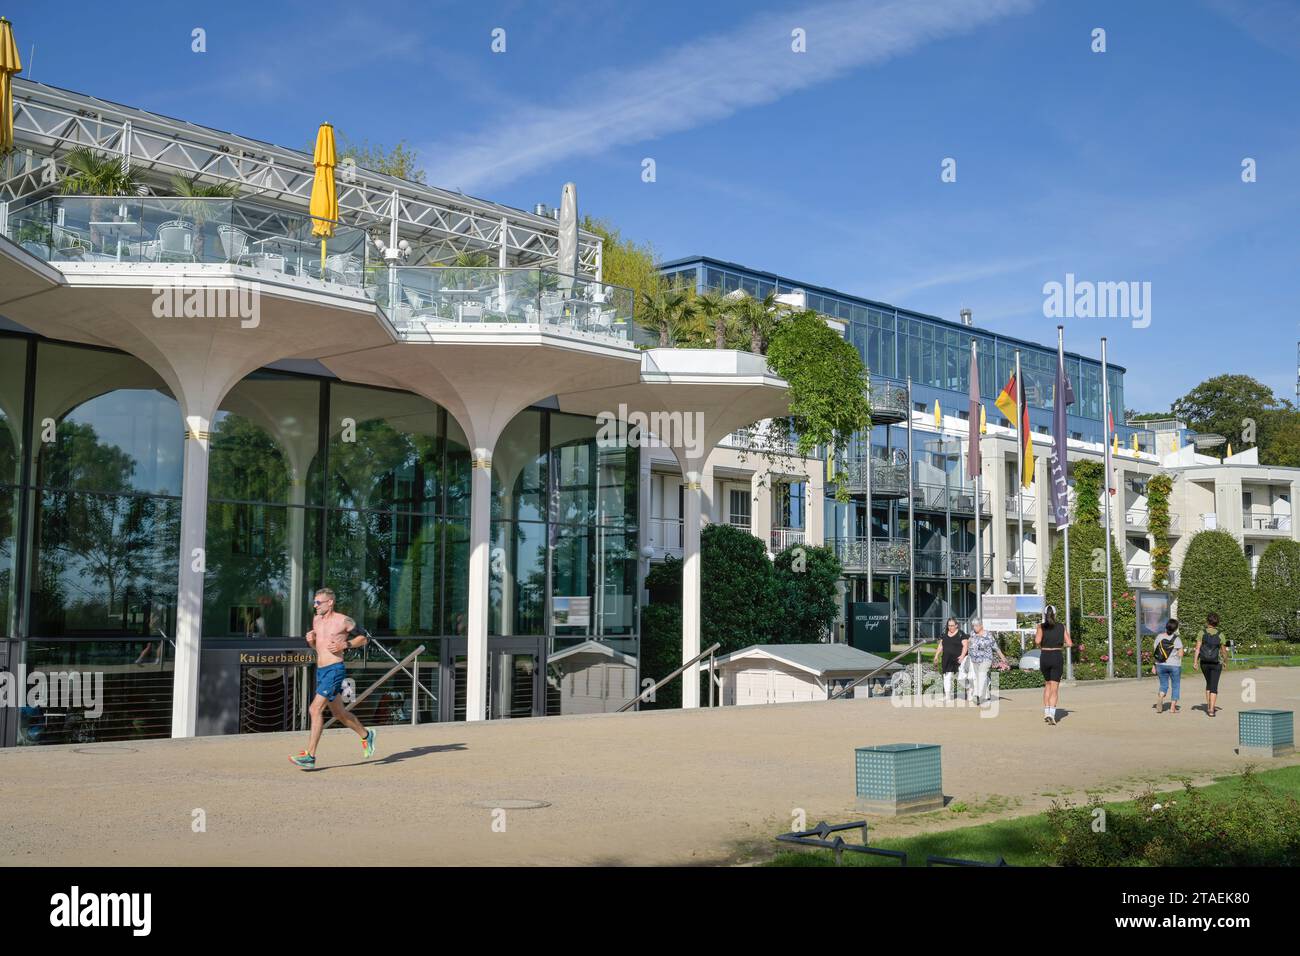 Kaiserbädersaal und Hotel Kaiserhof, Strandpromenade, Heringsdorf, Usedom, Mecklenburg-Vorpommern, Deutschland Stock Photo